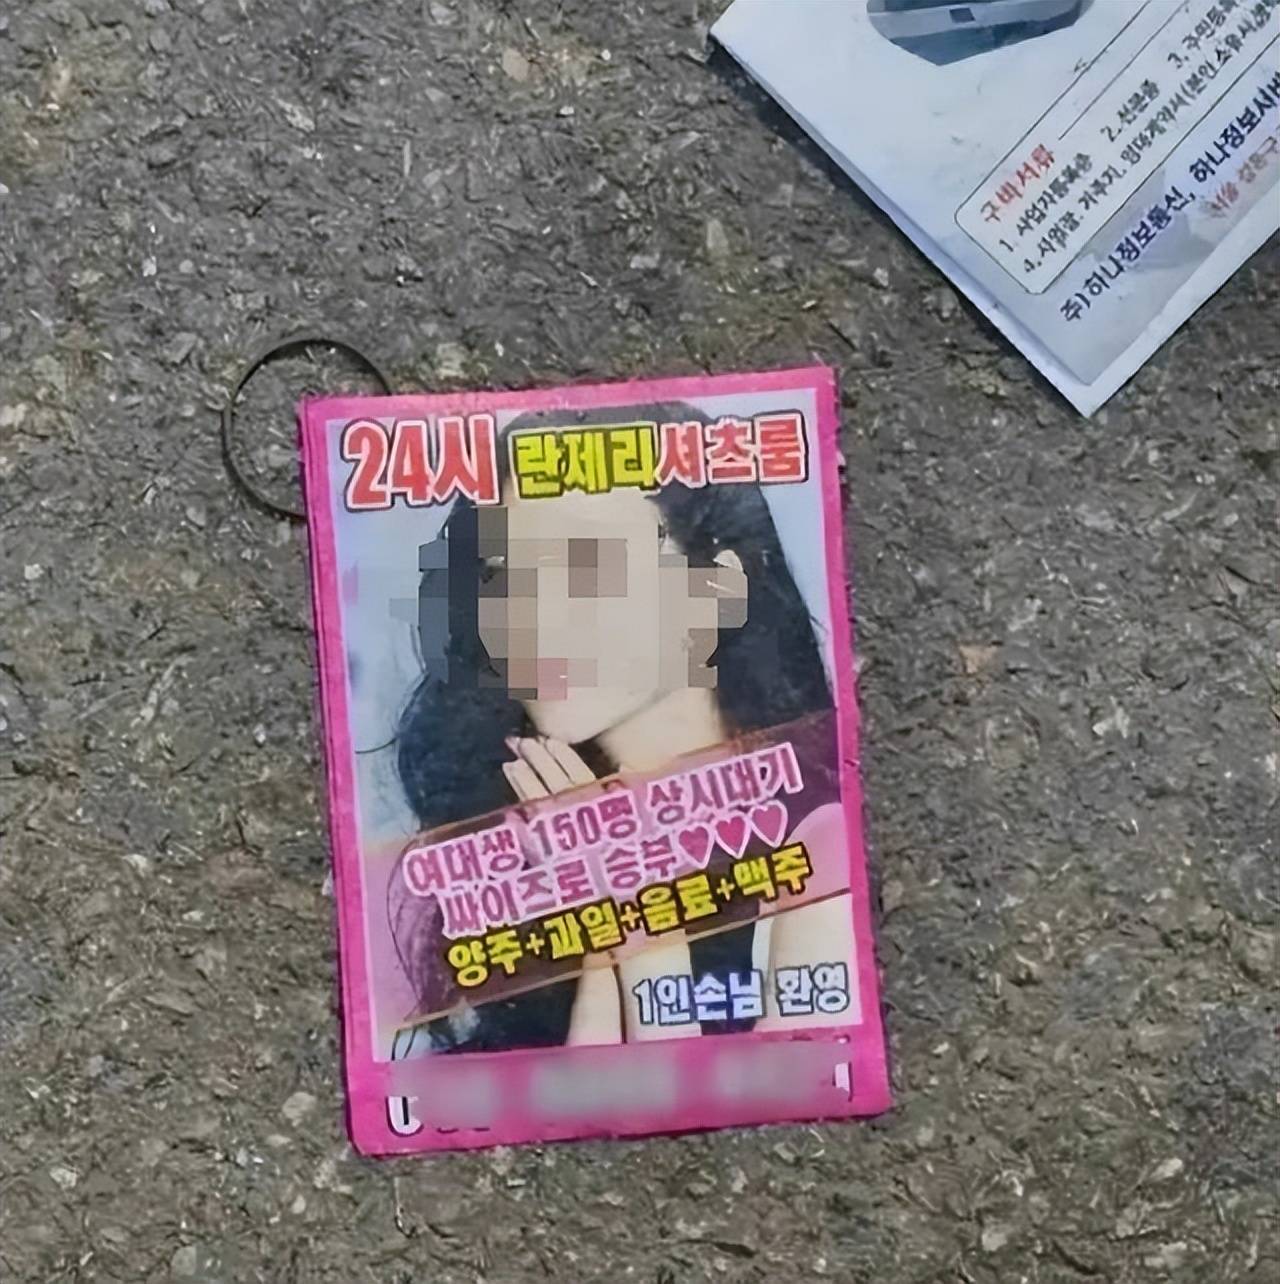 原标题：韩国街头擦边球广告盗用景甜照片，工作室回应：已第一时间进行维权处理